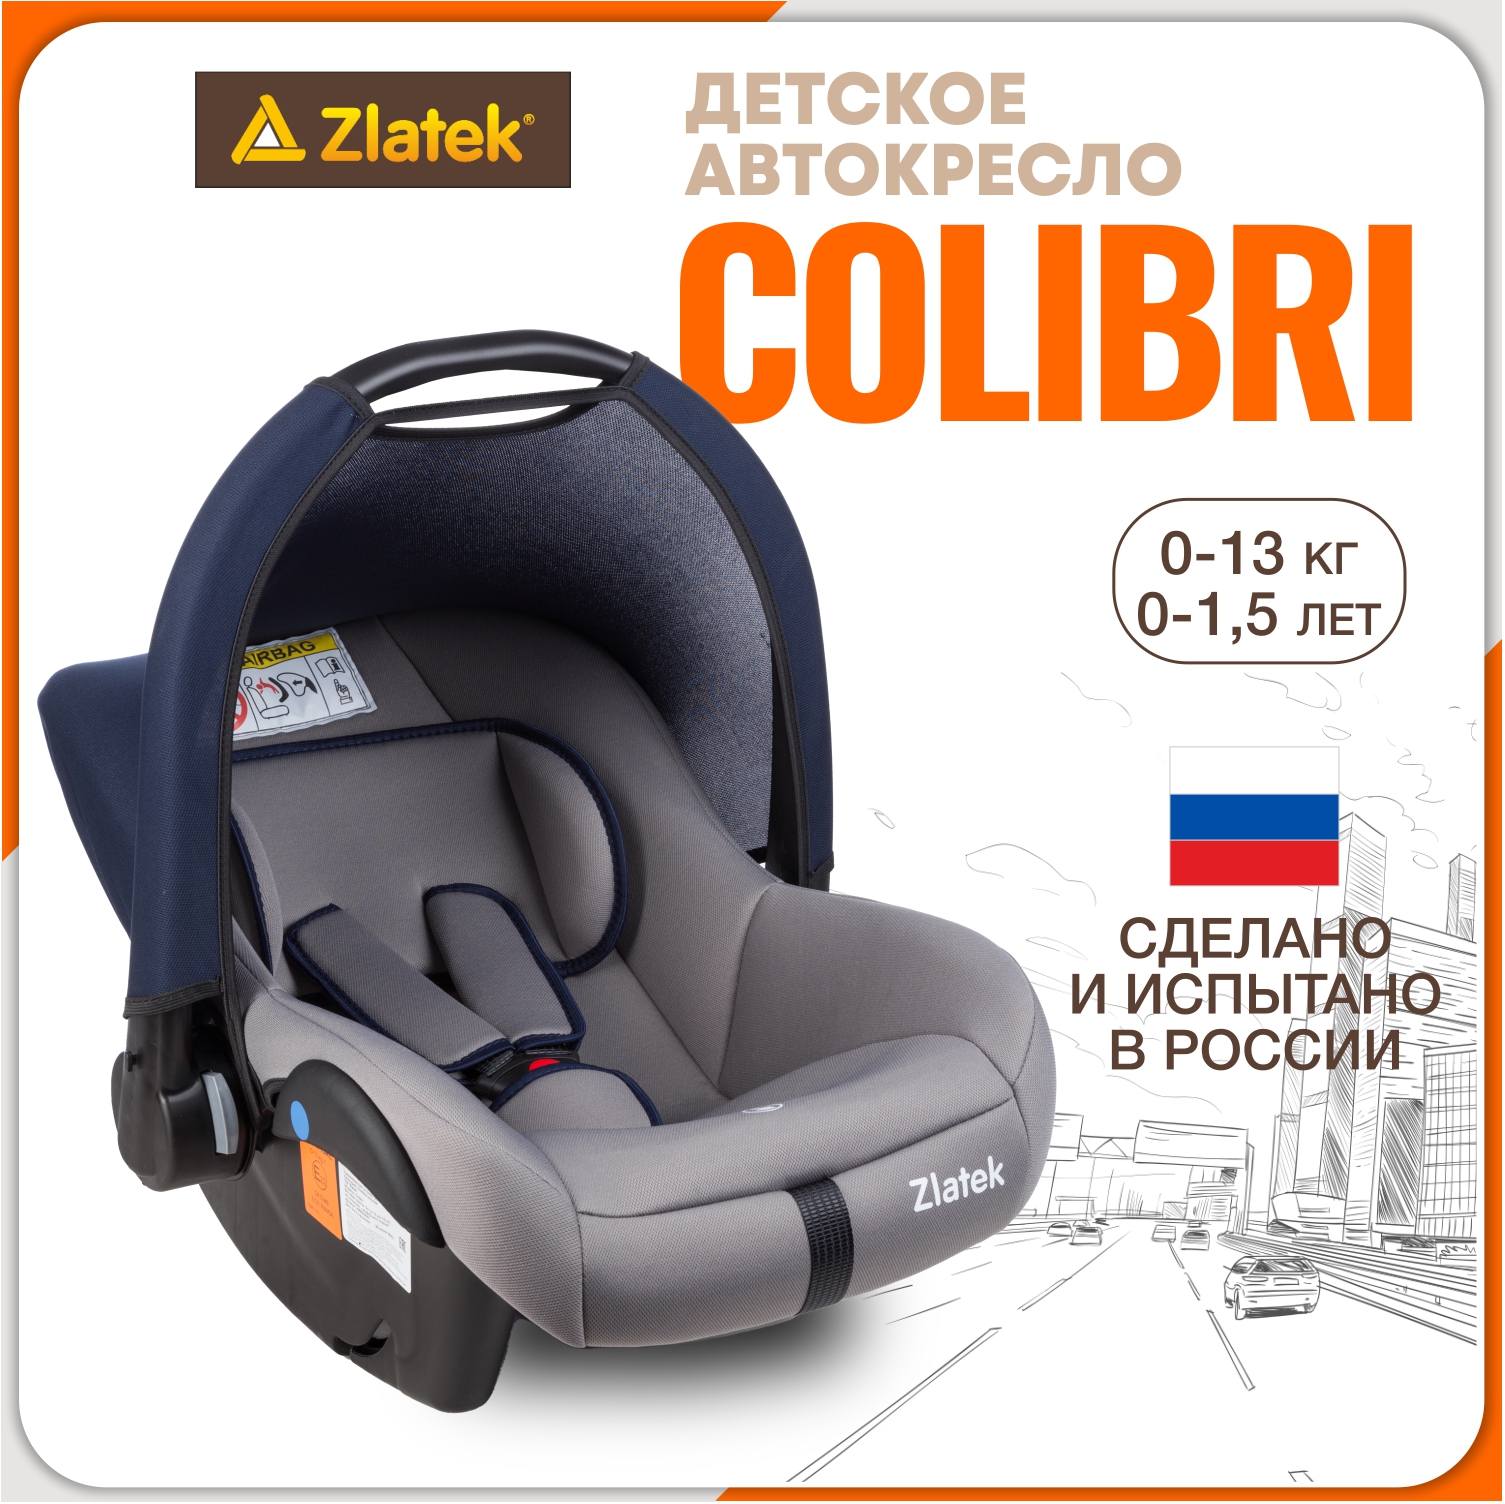 Автолюлька для новорожденных Zlatek Colibri от 0 до 13 кг, цвет сапфирово-серый